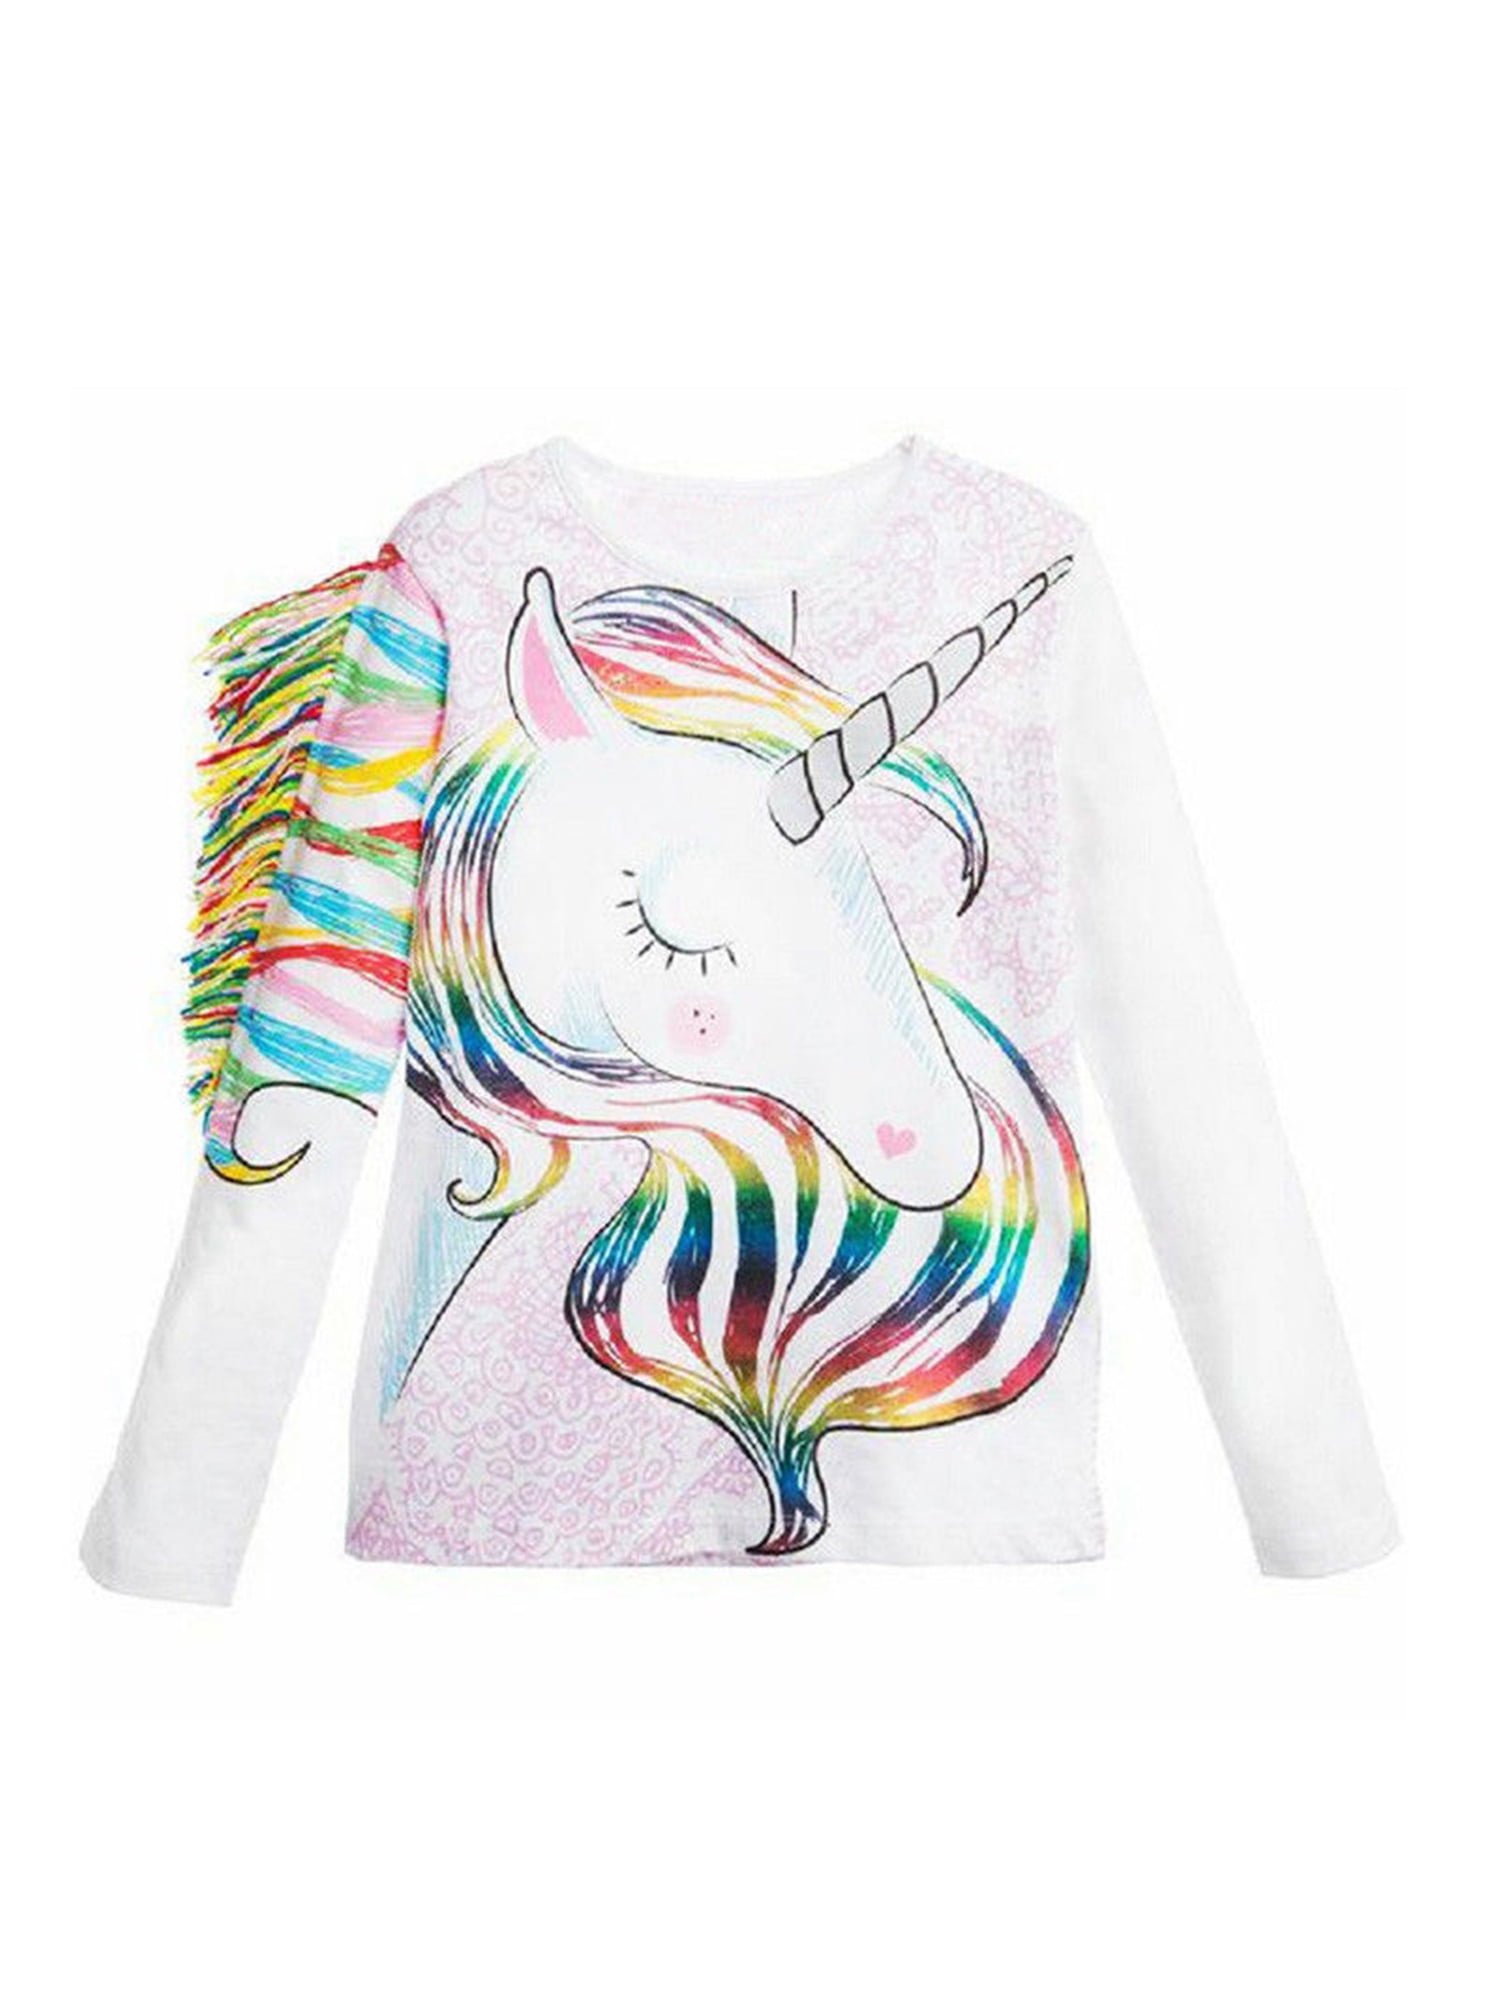 Girls Summer T-shirt Tops Short Sleeve Cartoon Horse Sequined Tops Casual Wear 